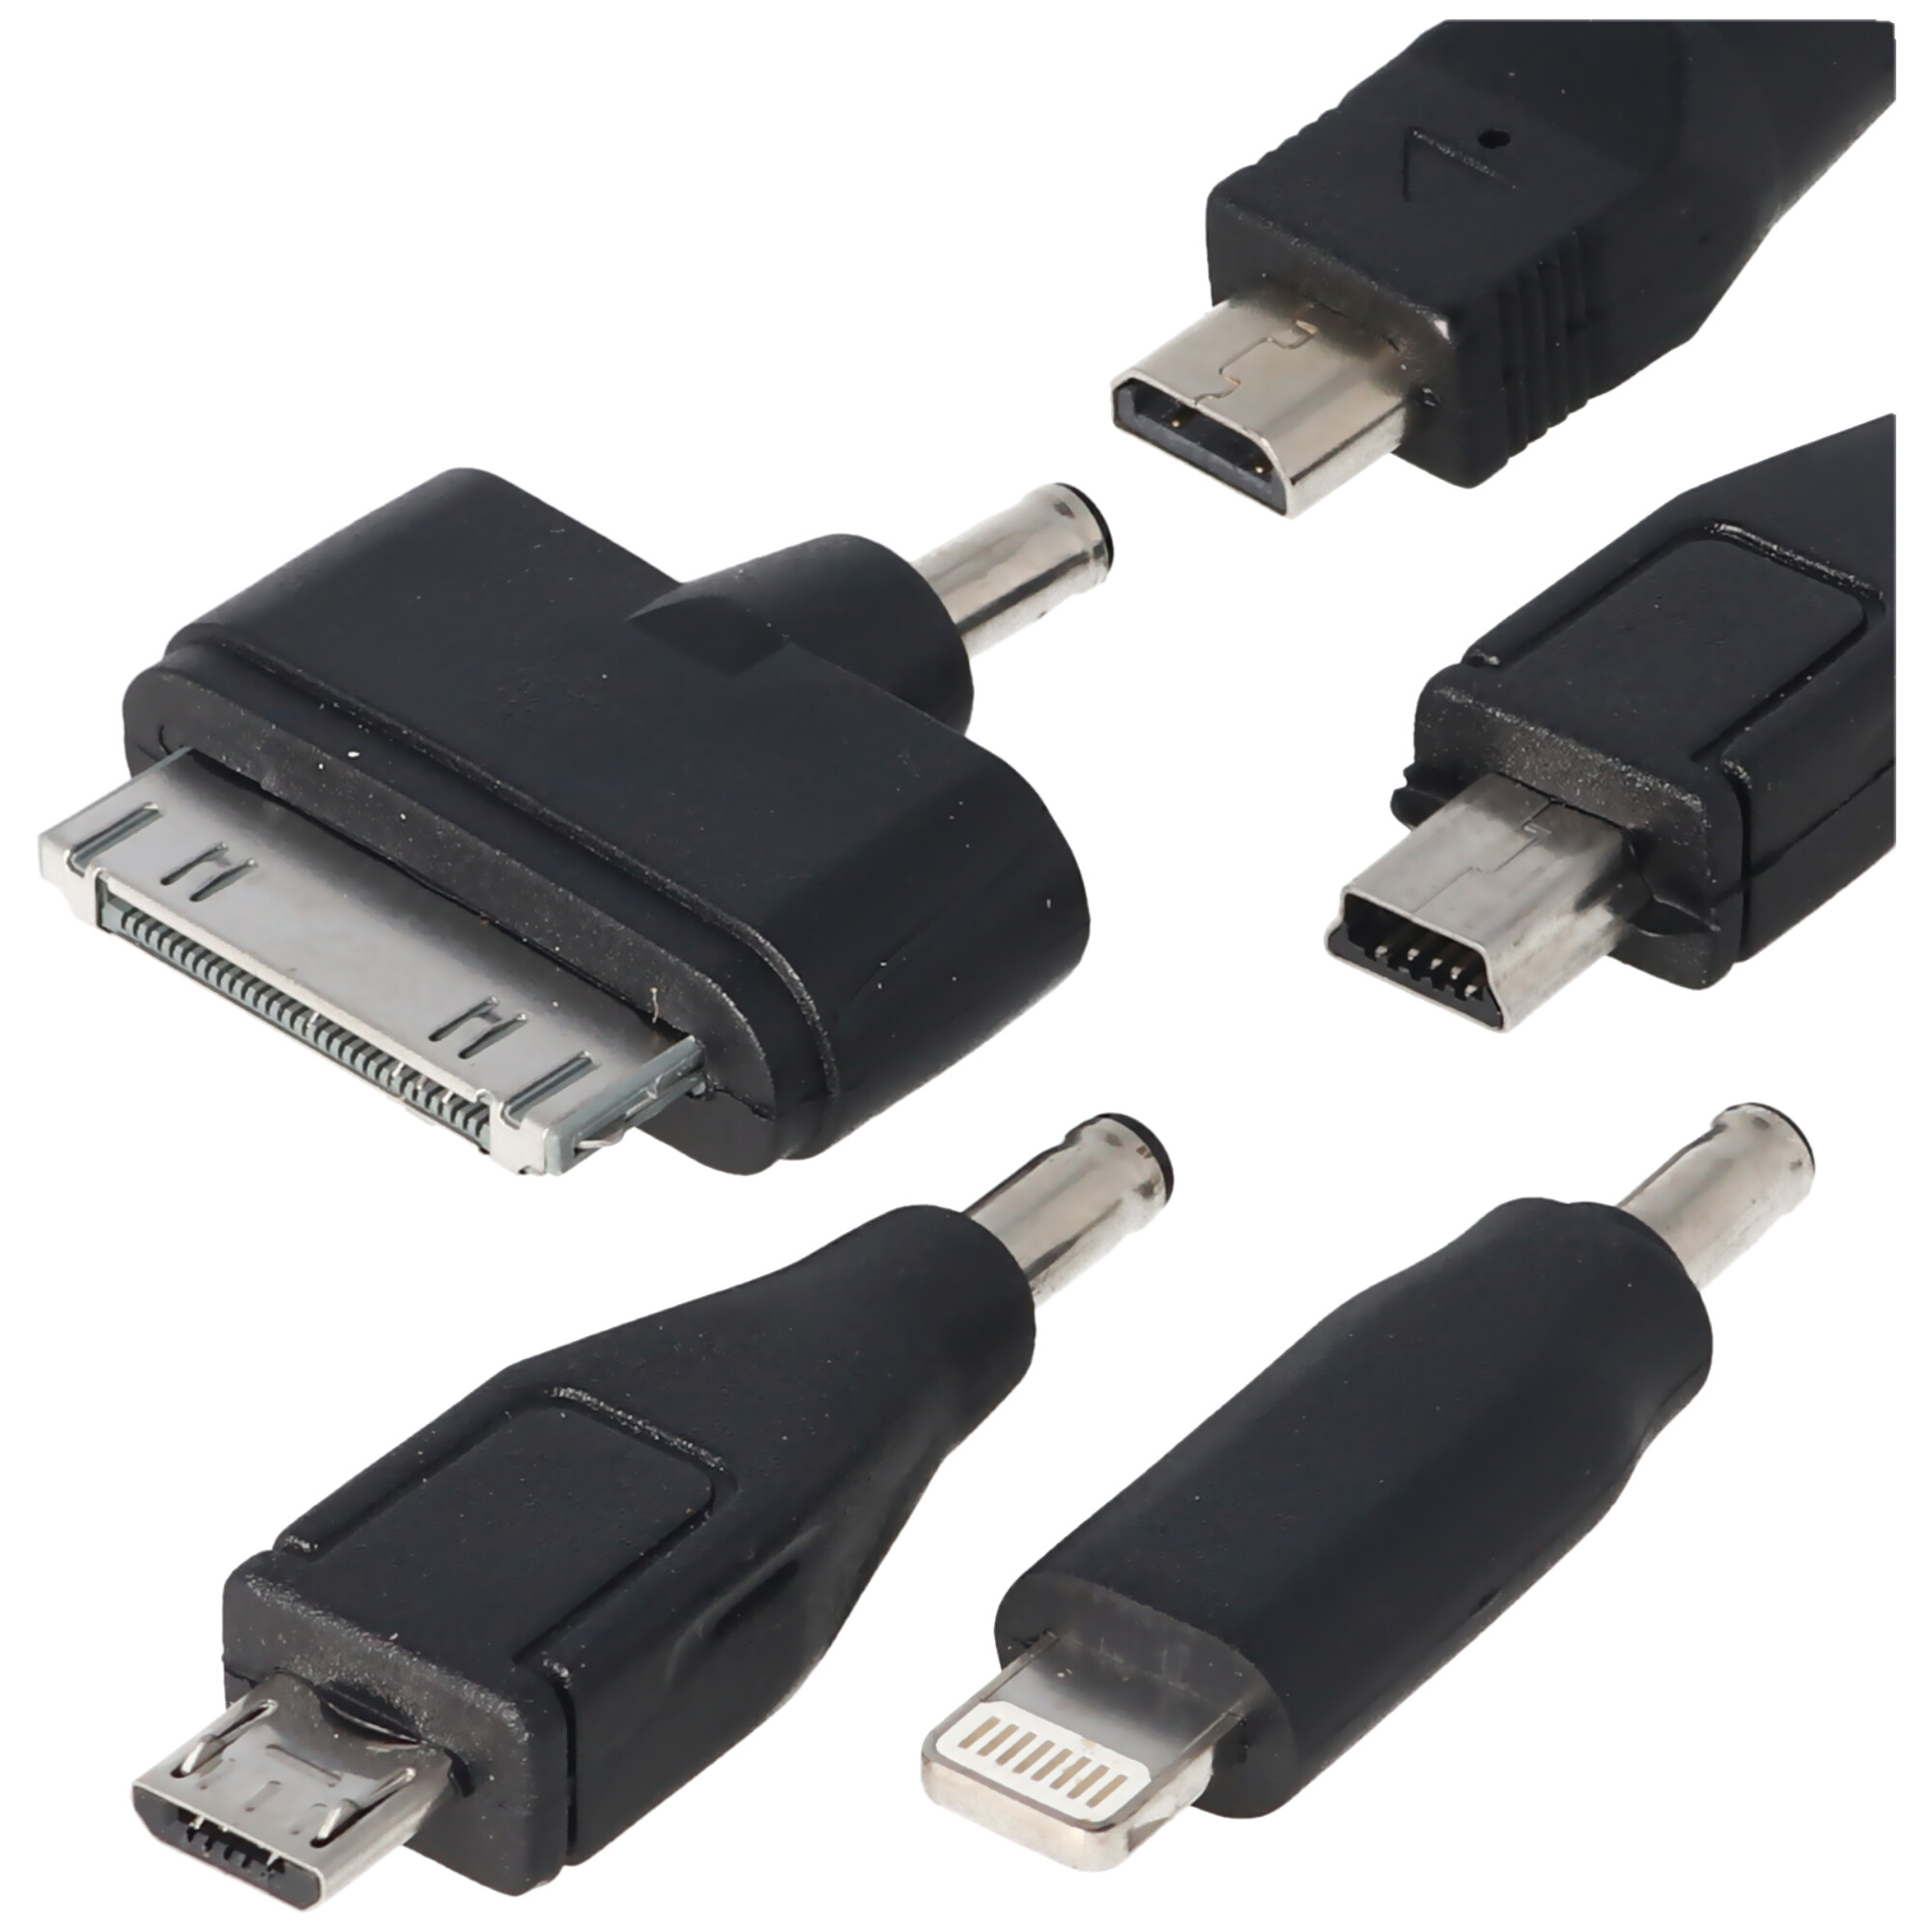 Universal Ladegrät mit Dual USB-Stecker und USB-C-Kabel